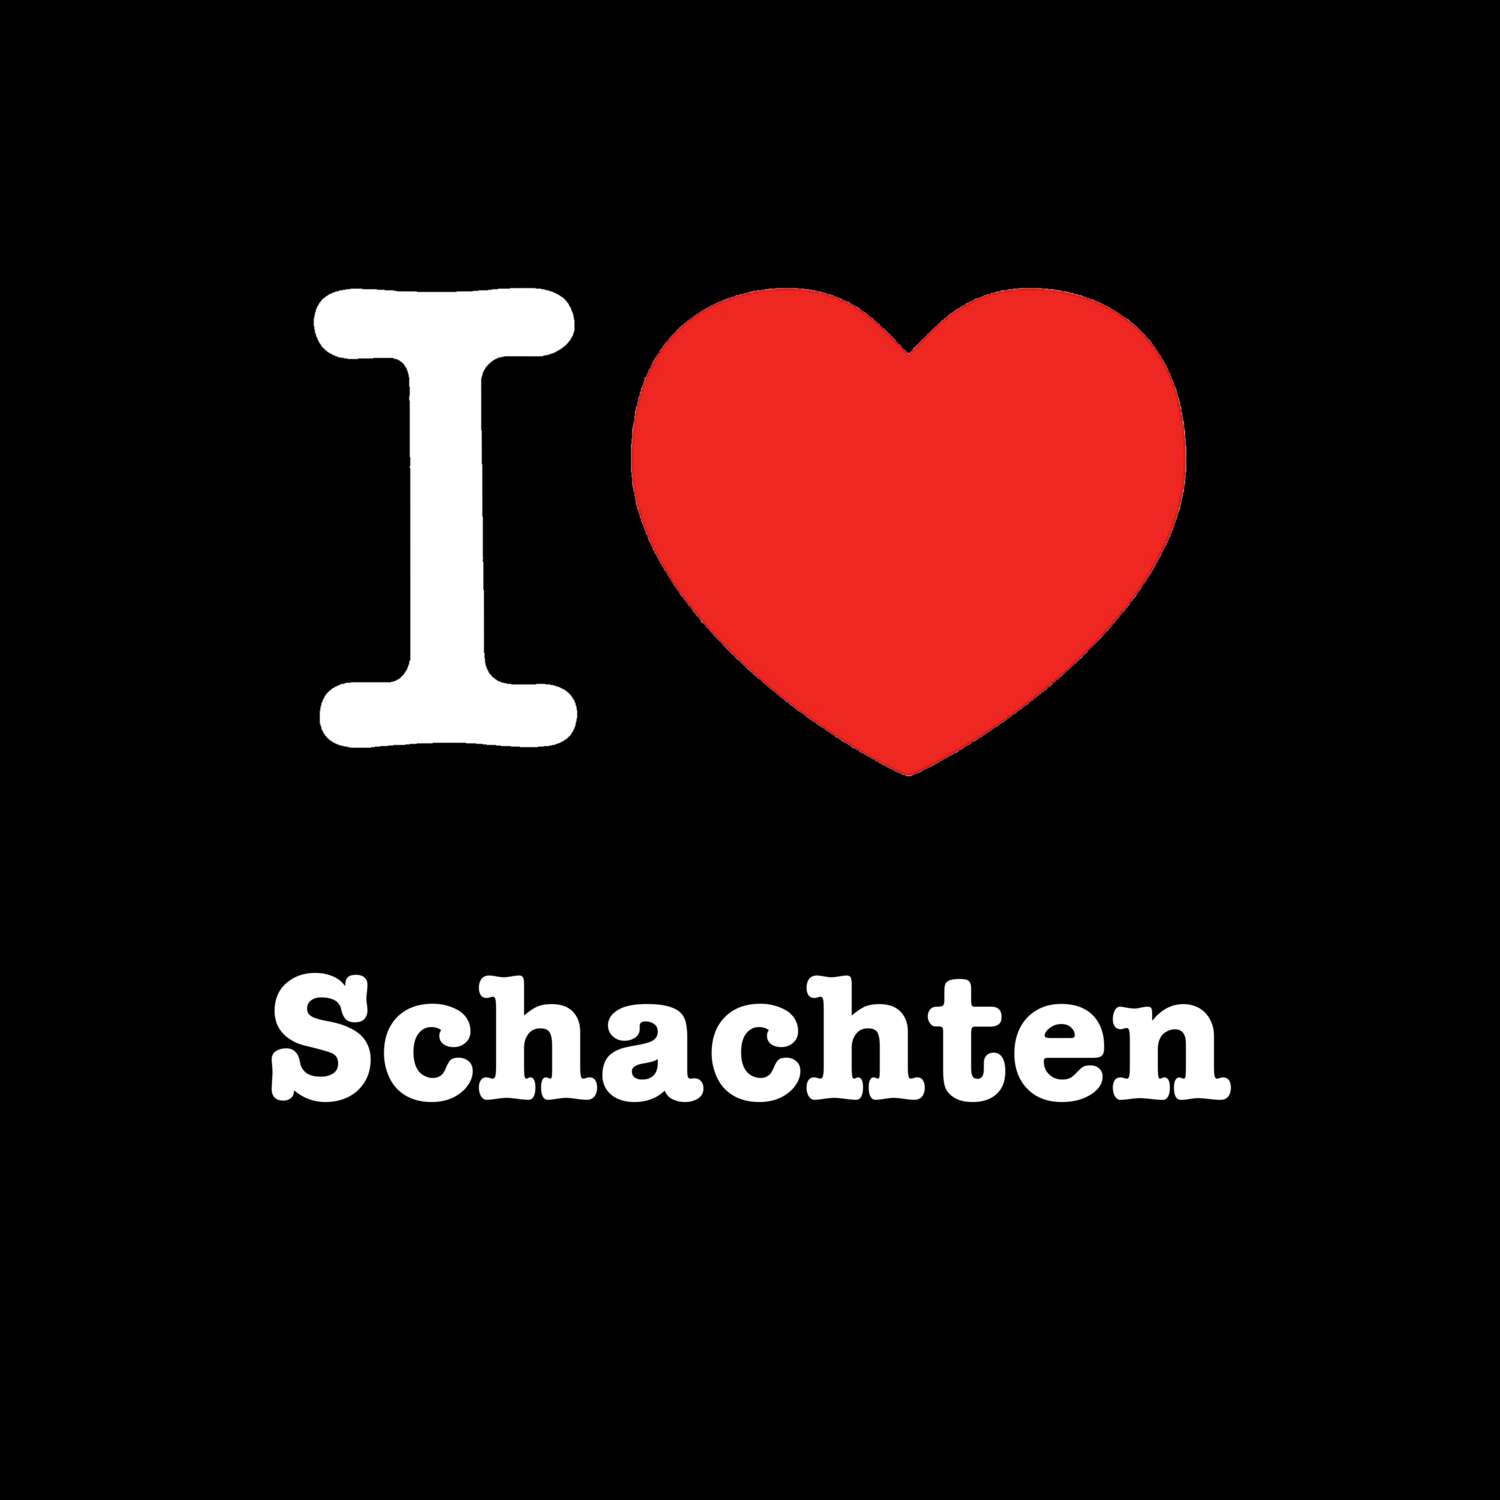 Schachten T-Shirt »I love«